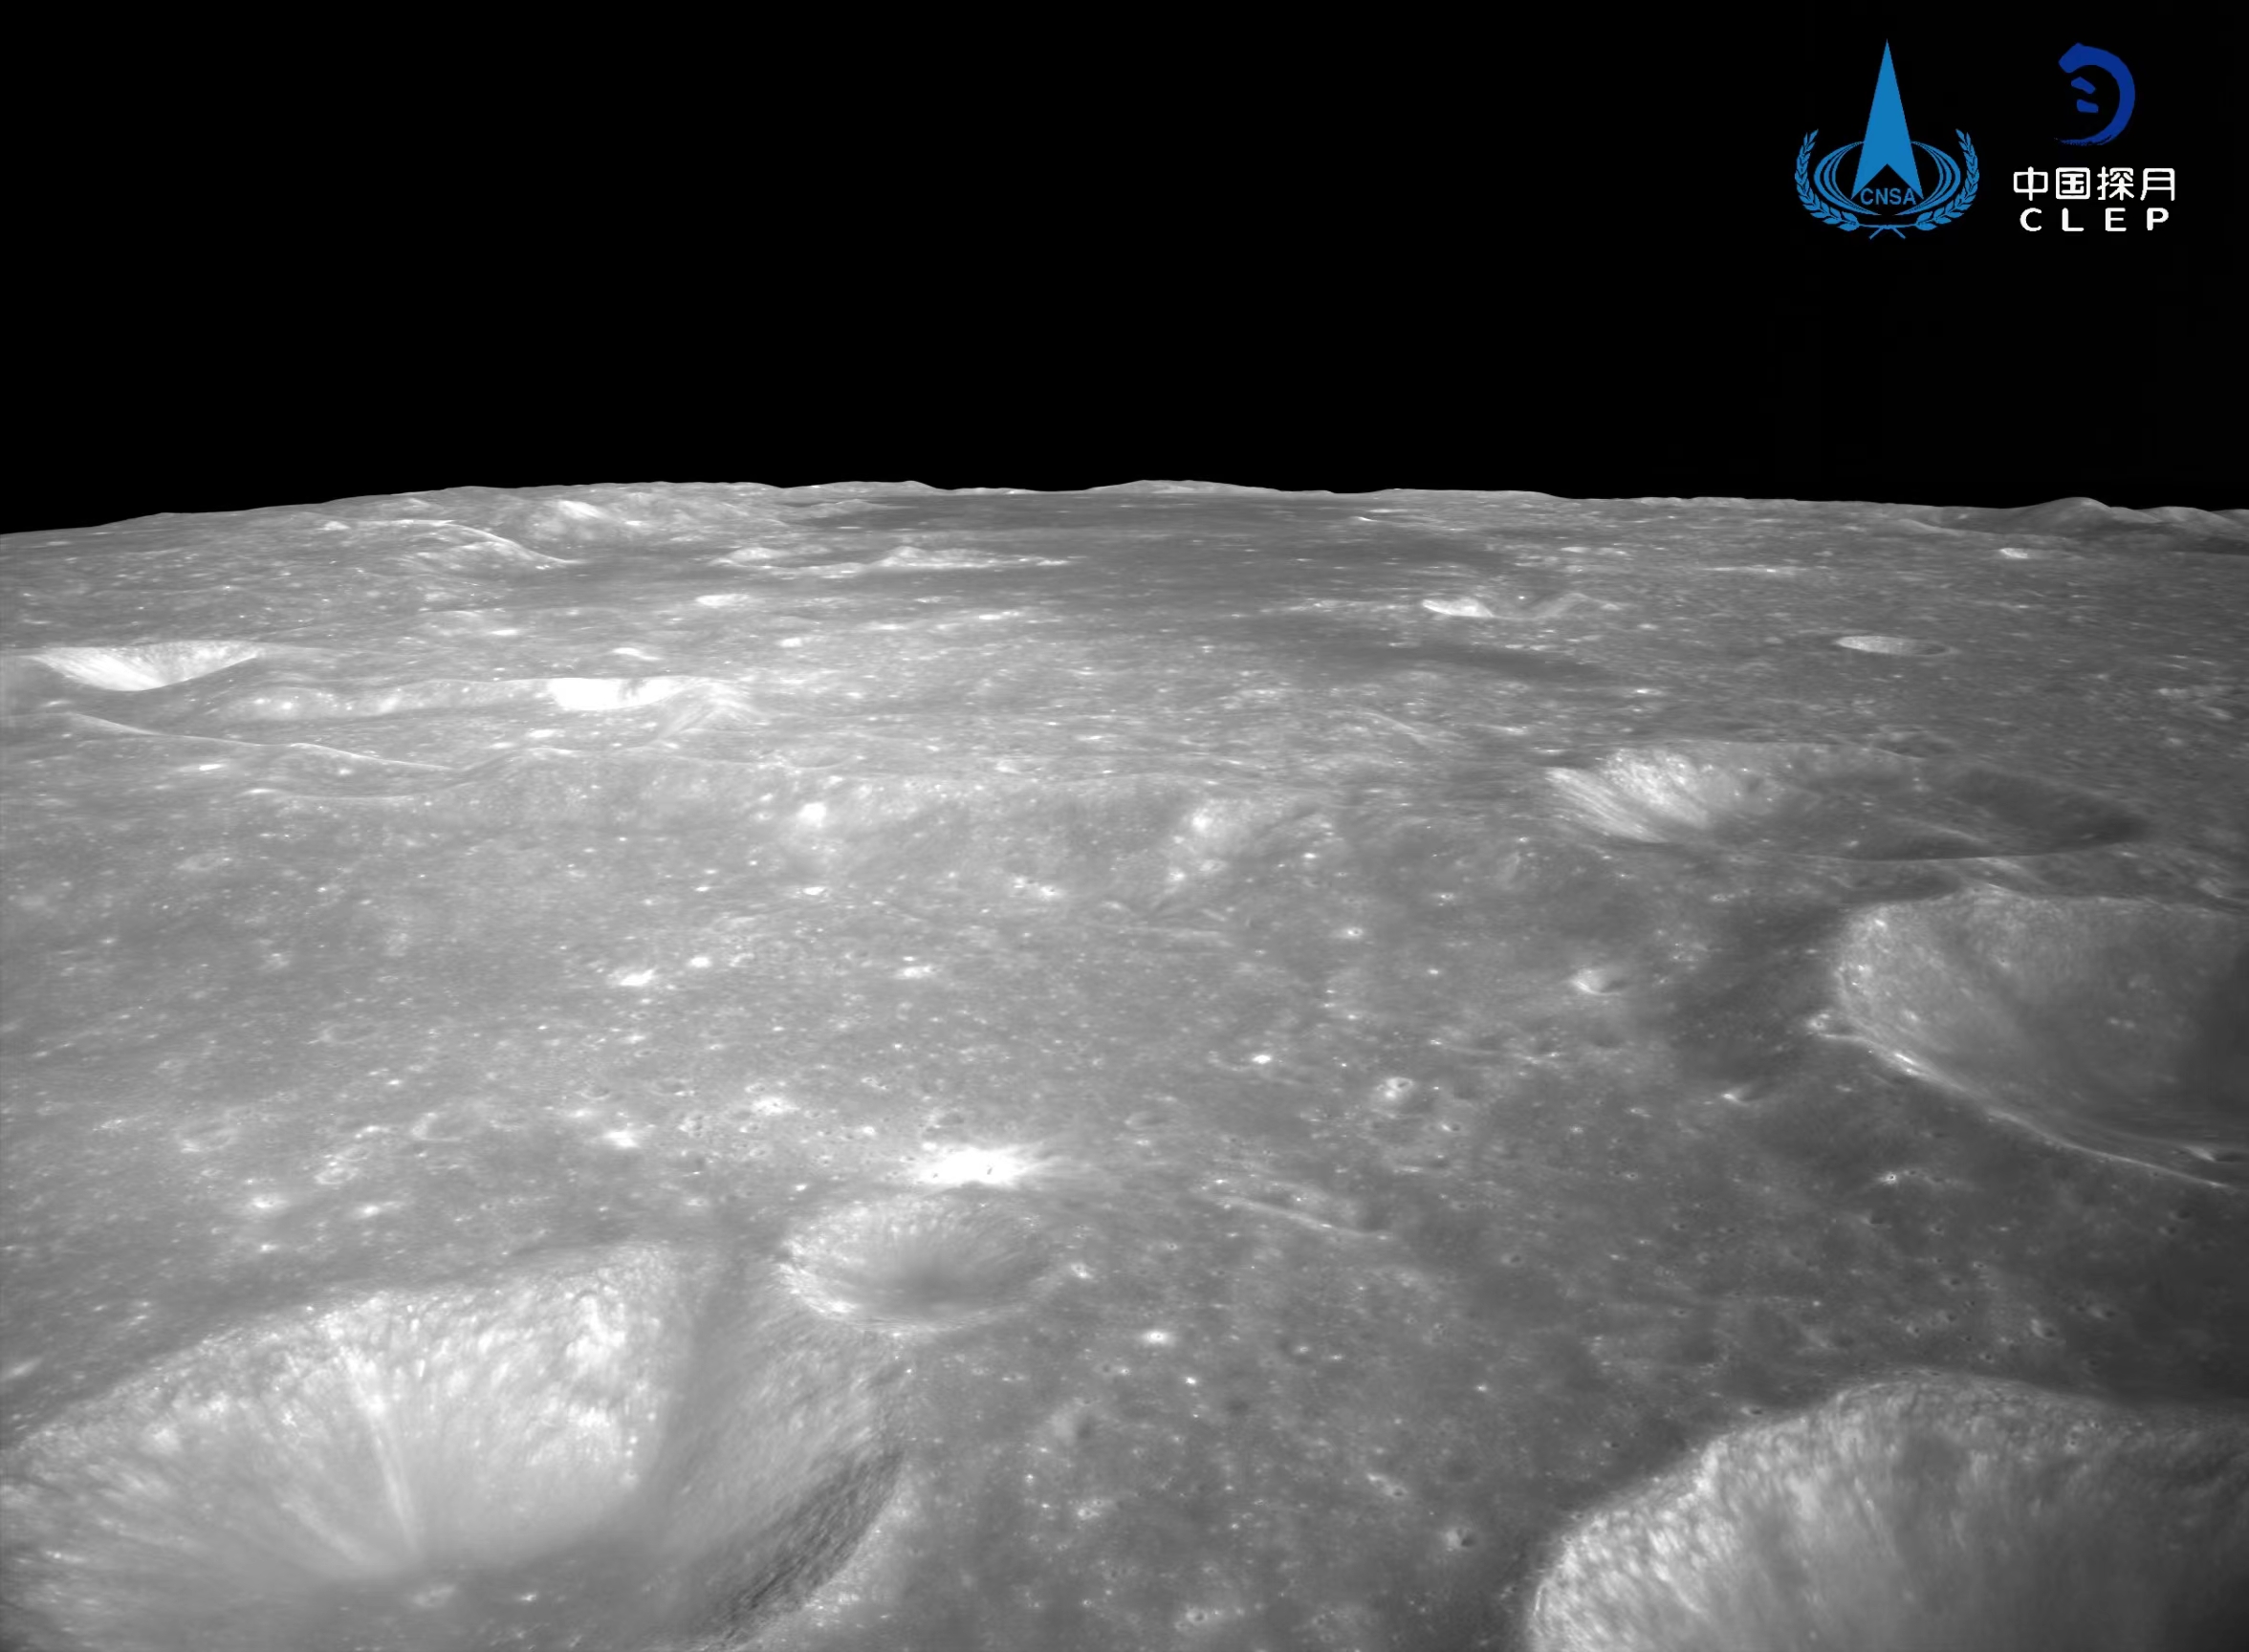 该图由降落相机刚开机时拍摄，发布包括落月过程中降落相机拍摄的嫦娥着陆区域附近影像
、对着陆点北侧月面拍摄的号拍彩色图像镶嵌制作而成。国家航天局发布嫦娥六号着陆器着陆月球背面拍摄的摄月系列影像图
	，拍摄的月背区域上部中间为暗色的玄武岩分布区。图像的下方是着陆腿和着陆时冲击挤压隆起的月壤。图像显示拍摄的月背区域分布有大量亮色环形坑
。图像显示拍摄月背区域中下部和右部分布有多个十多公里直径的环形坑	，分布有少量亮色石块
。